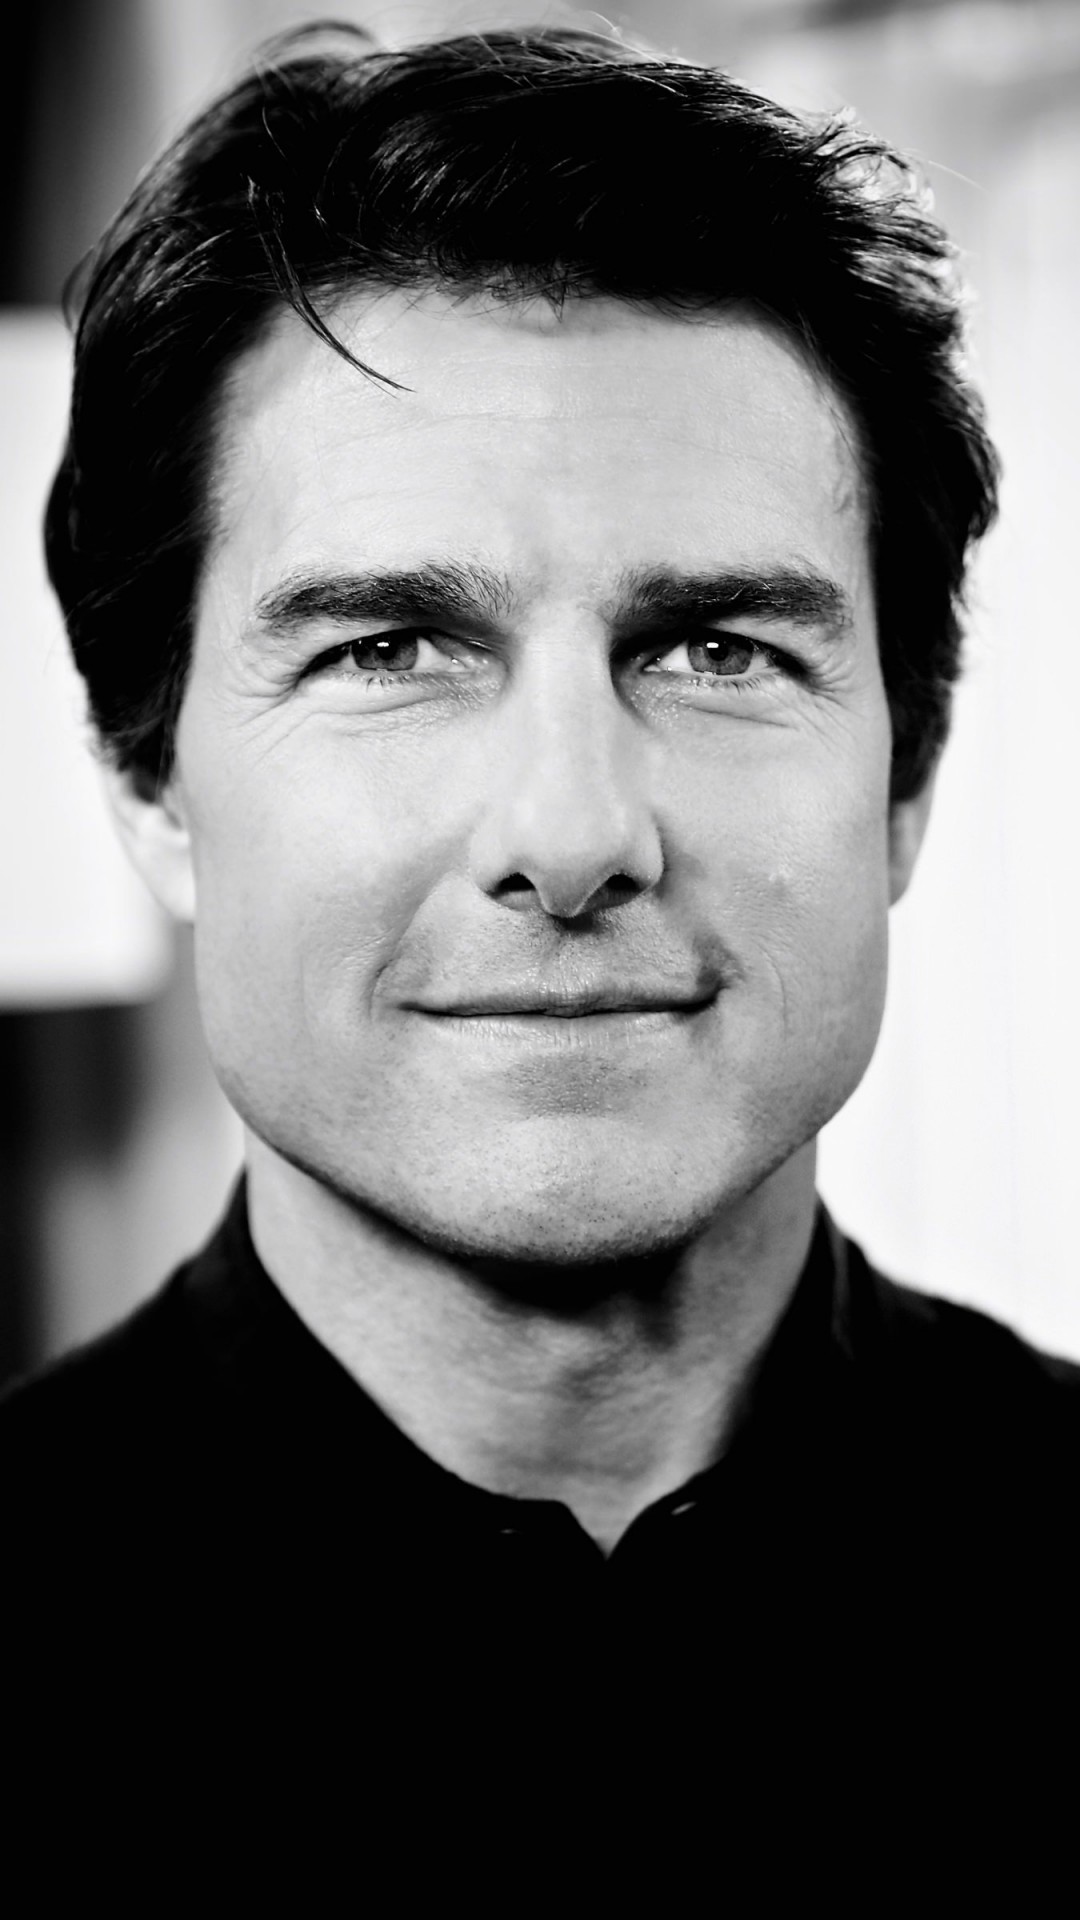 Tom Cruise Black & White Portrait Wallpaper for LG G2